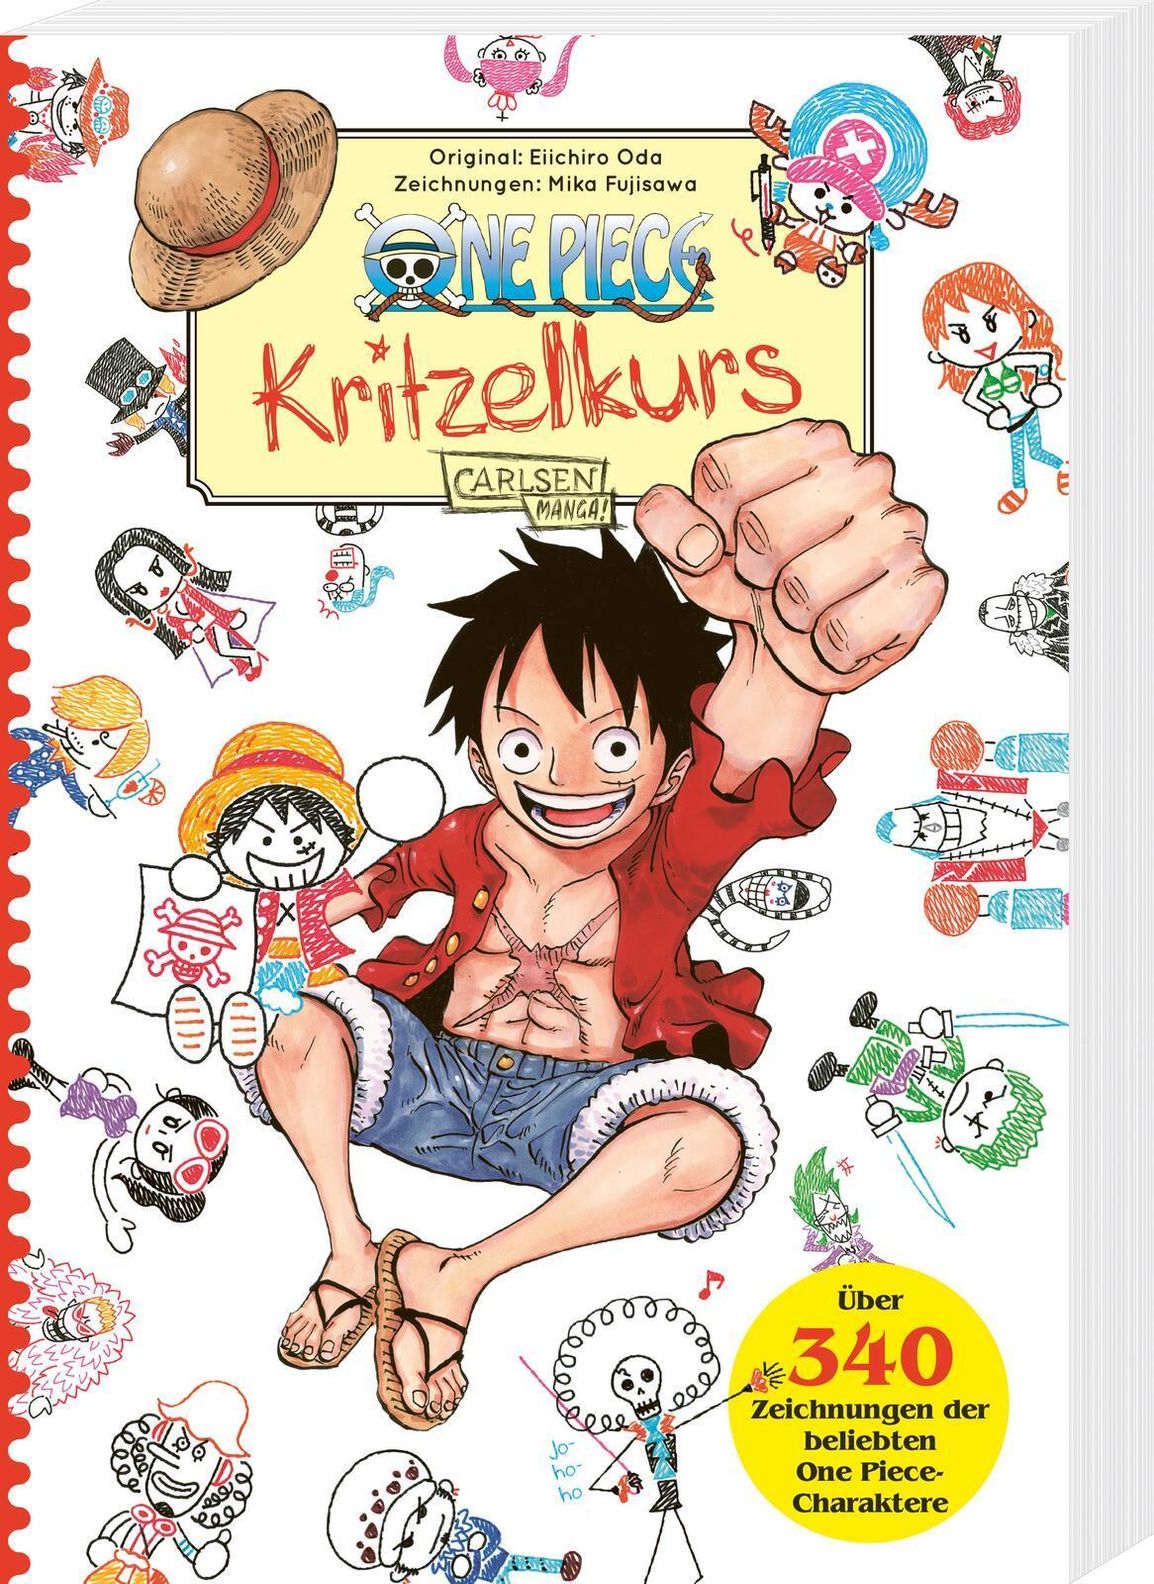 One Piece, Vol. 60 Mangá eBook de Eiichiro Oda - EPUB Livro